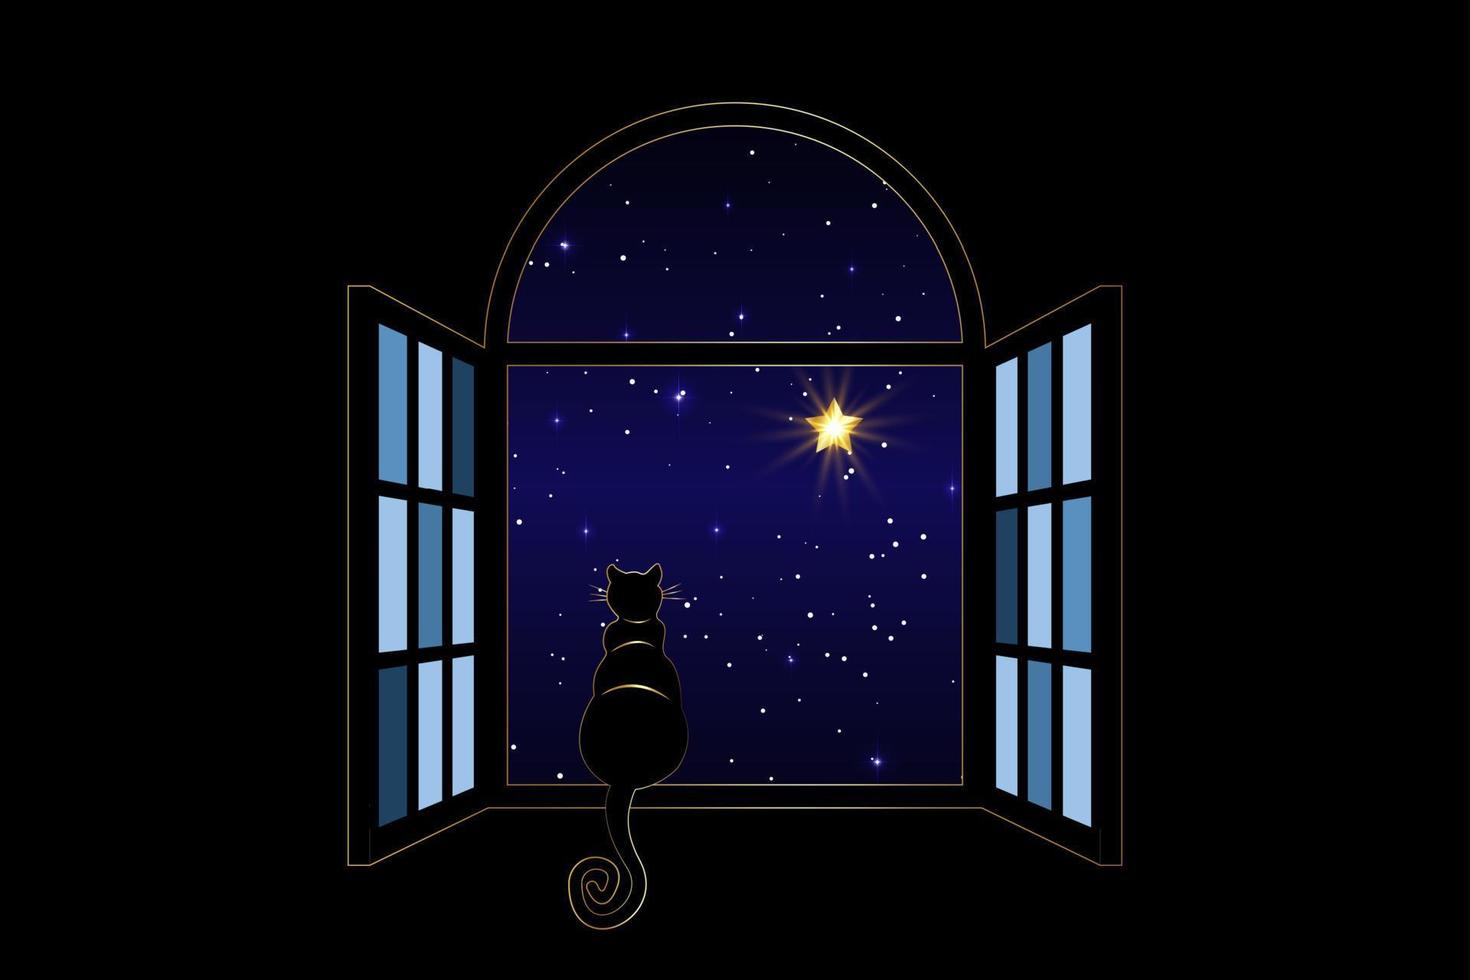 gatto nero seduto sulla finestra di notte guarda il cielo notturno e le stelle brillanti, stella sirius, illustrazione vettoriale